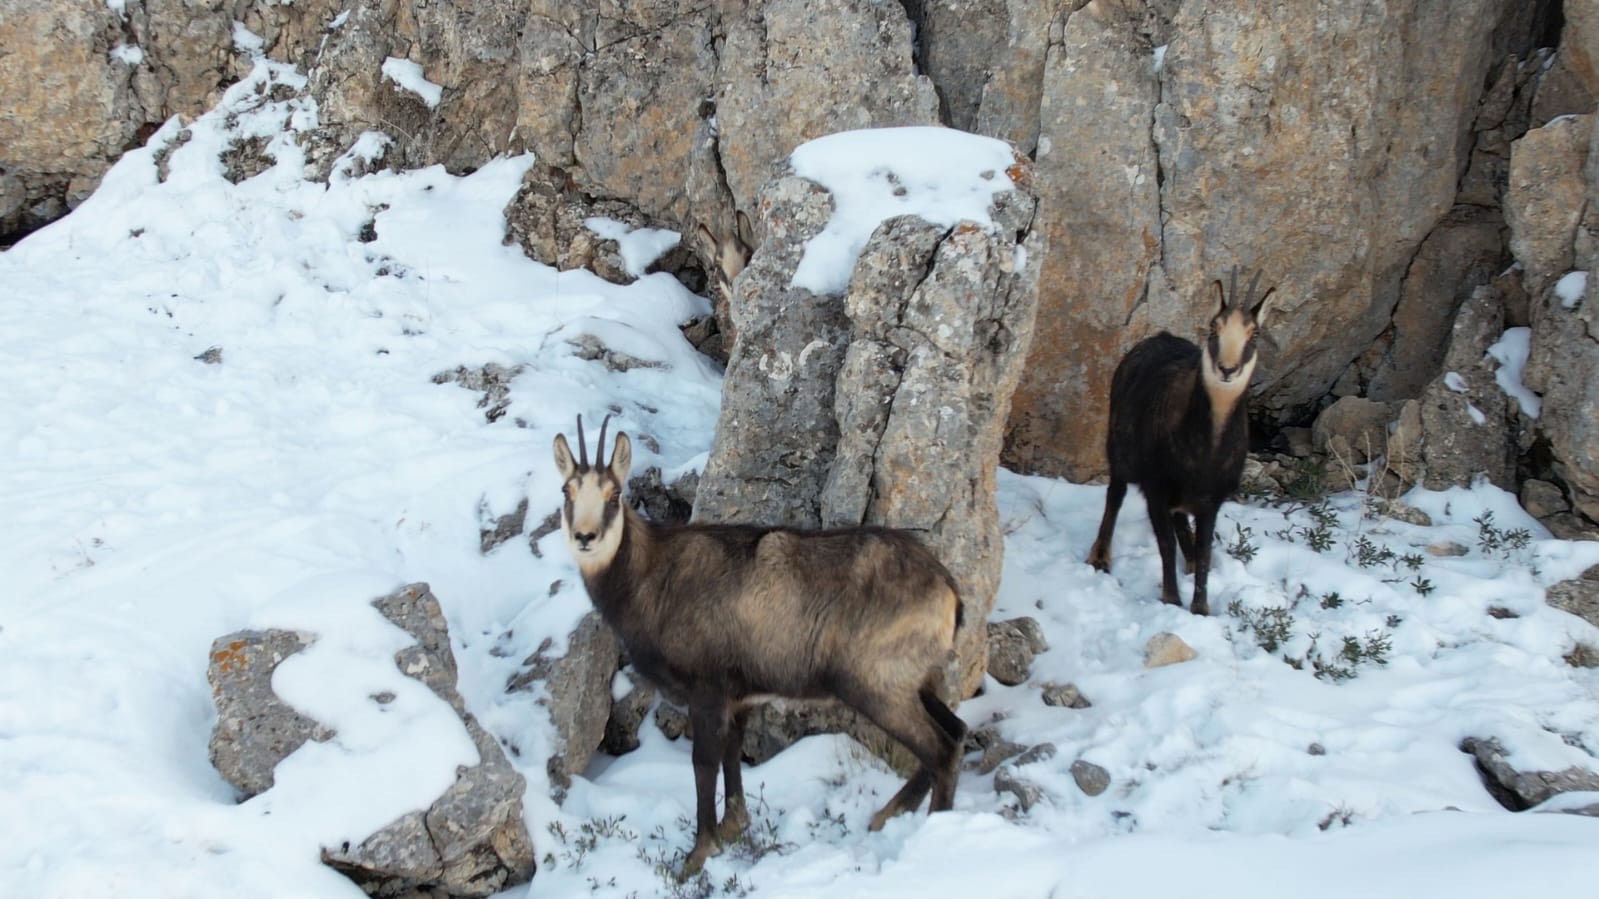 Karlı arazide yiyecek arayan çengel boynuzlu dağ keçileri görüntülendi